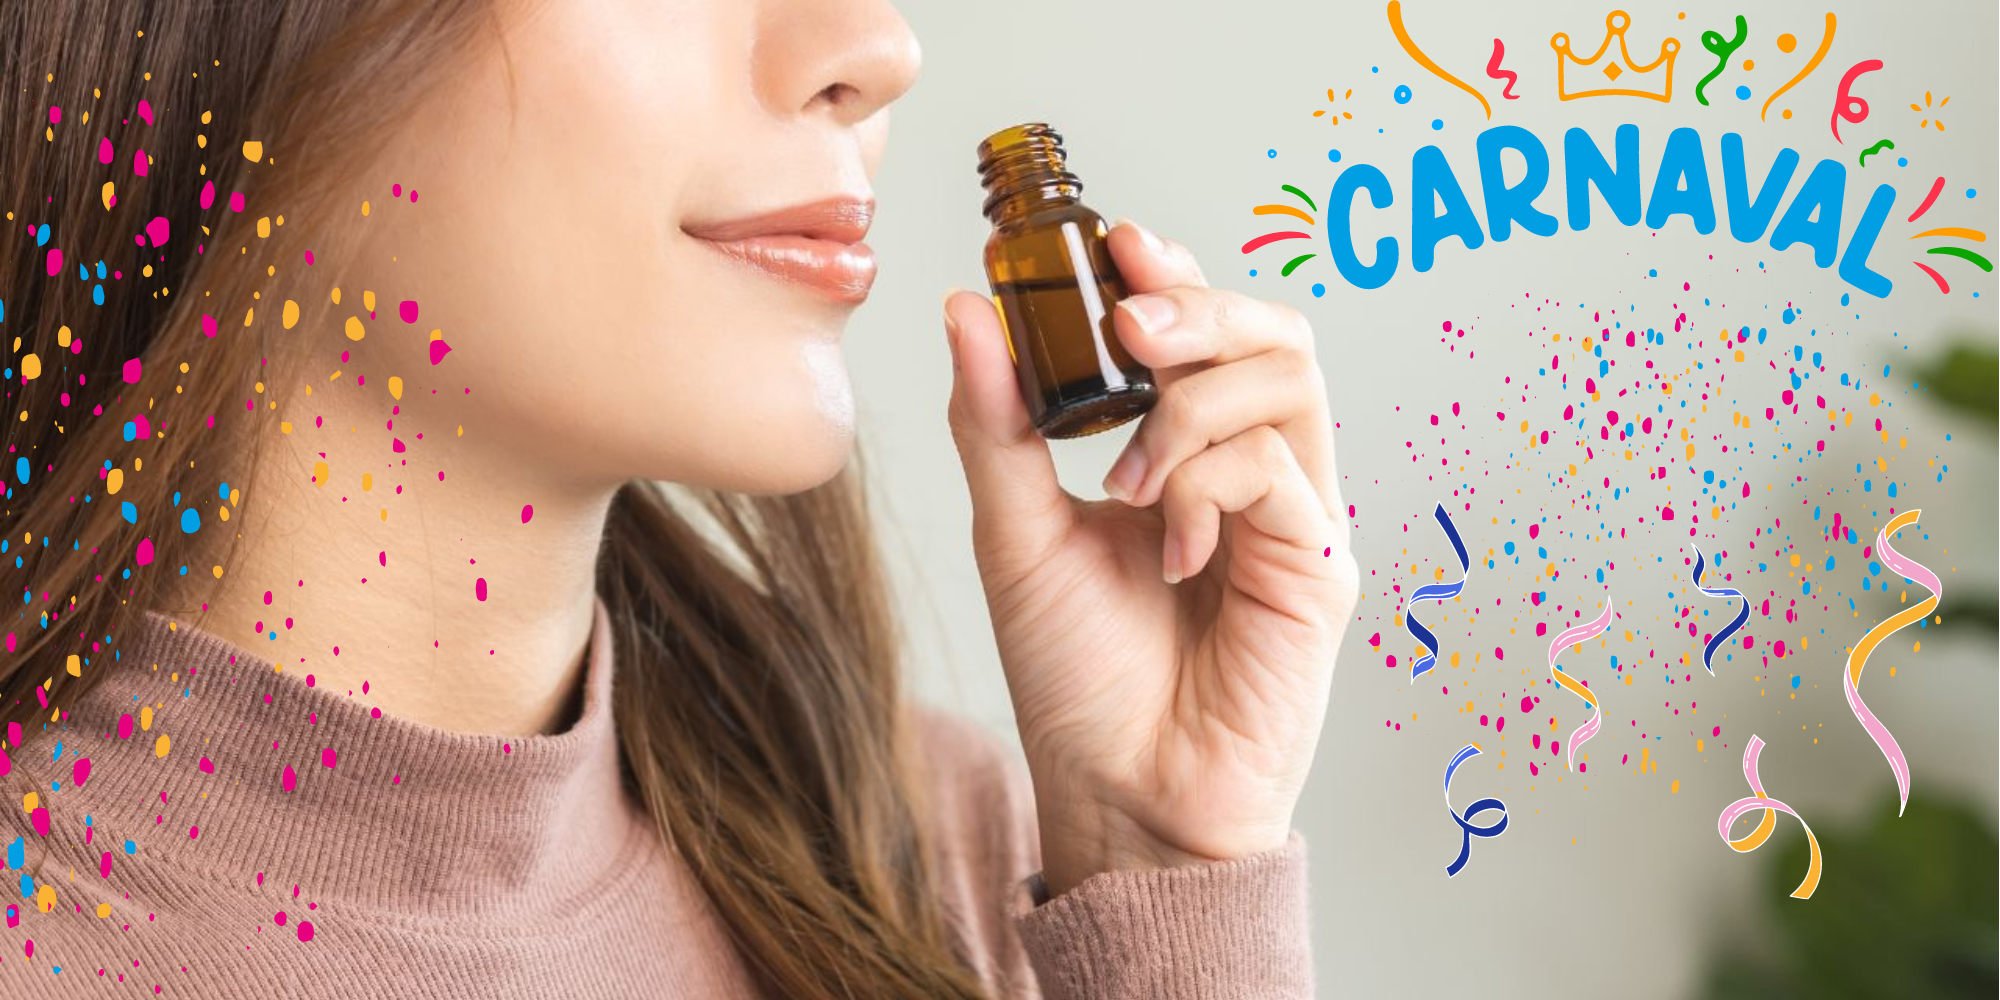 Aromaterapia no Carnaval: conheça os benefícios que os óleos essenciais podem lhe proporcionar